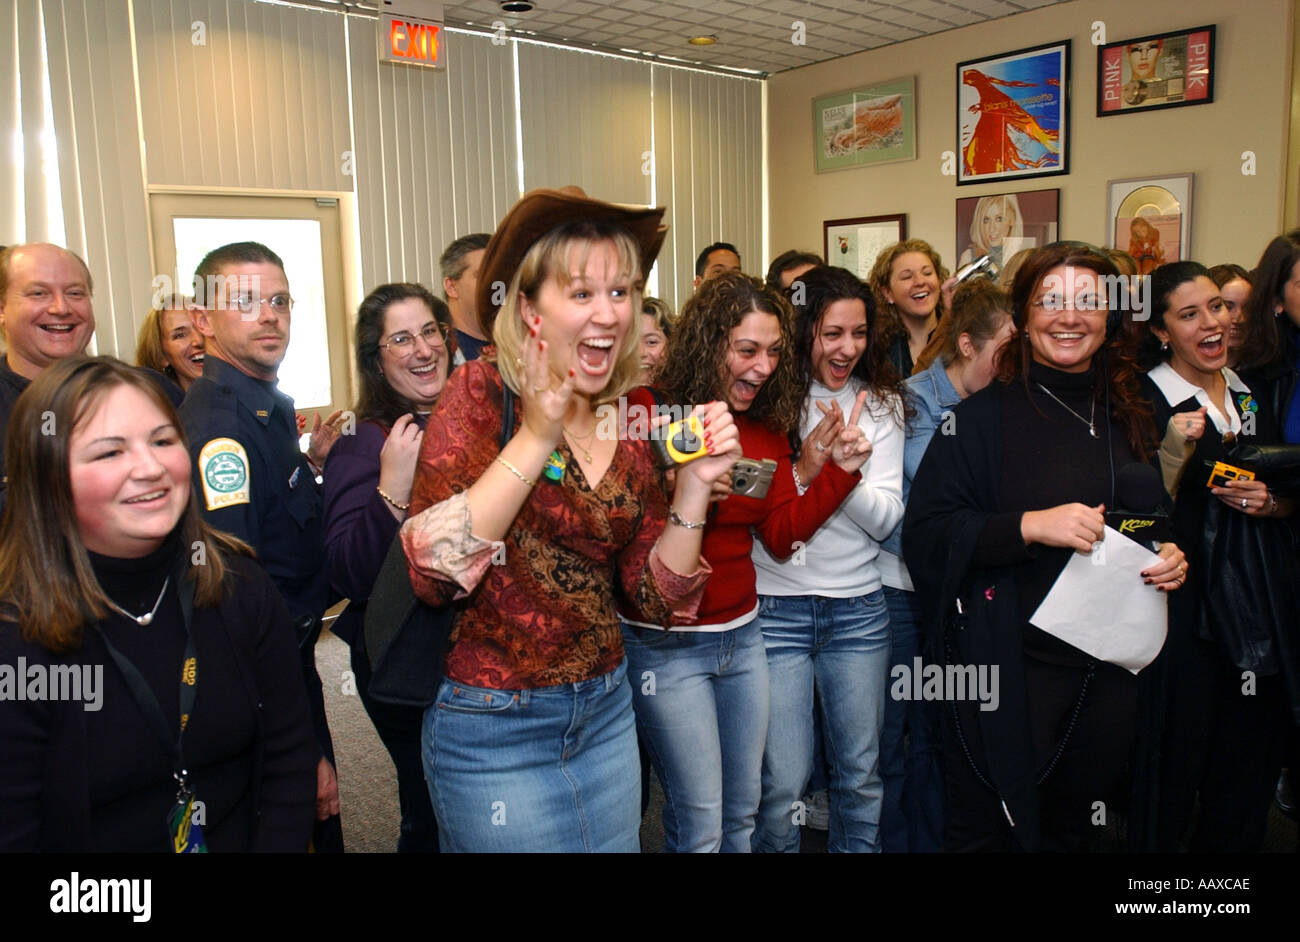 Rock fans groupies folles en attendant de voir Bon Jovi bande lors d'une apparition publique Banque D'Images